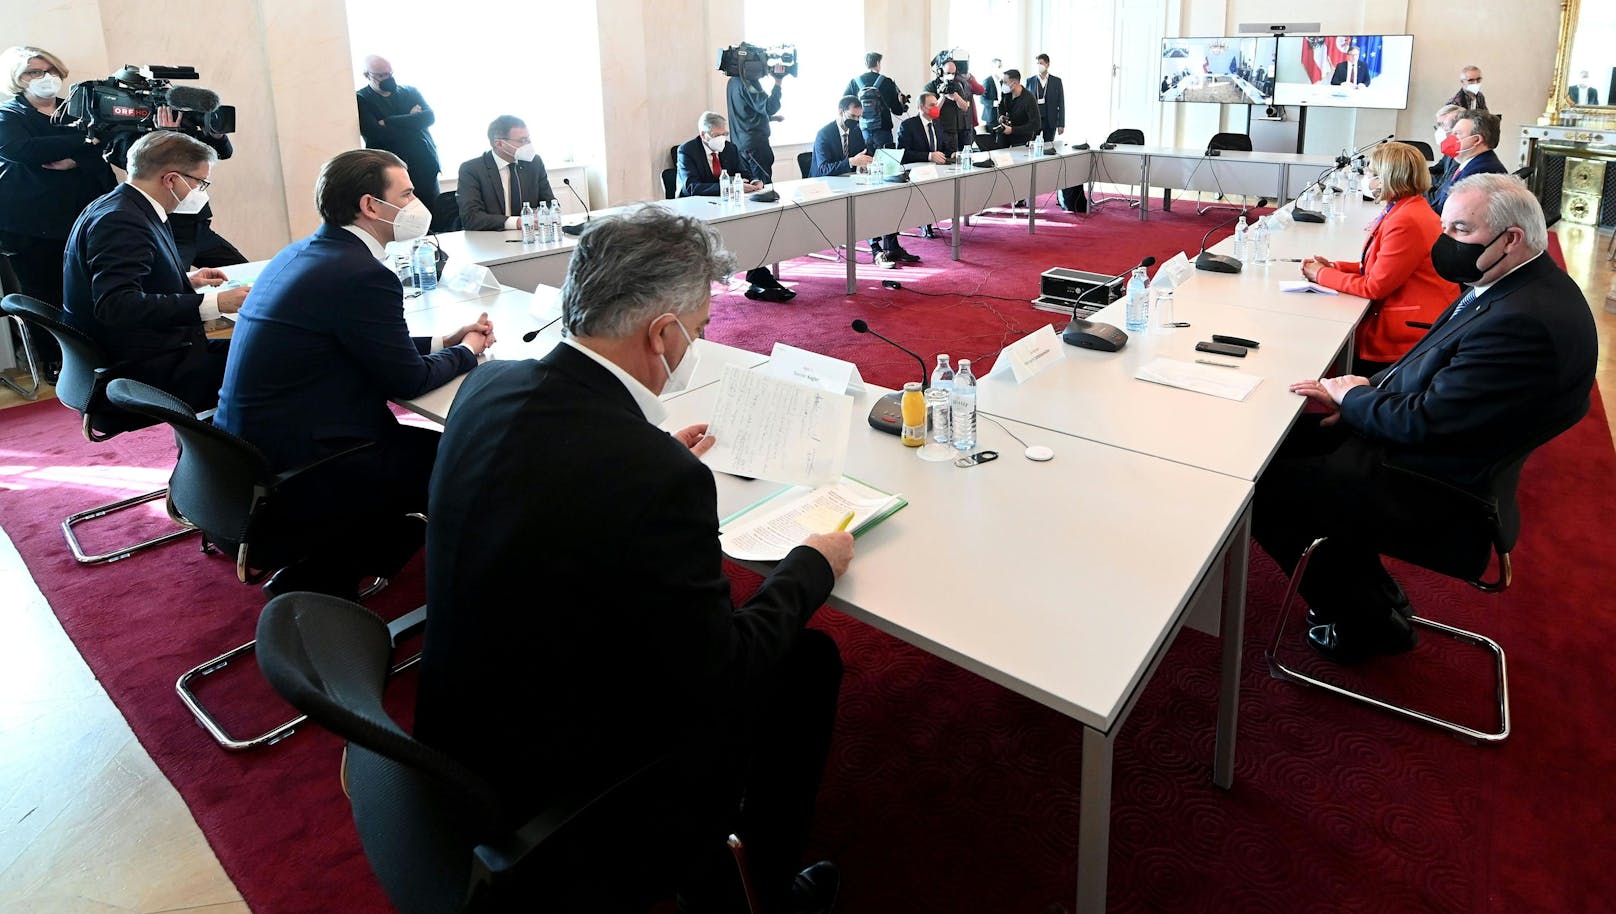 Gesundheitsminister Rudolf Anschober (Grüne), Bundeskanzler Sebastian Kurz (ÖVP) und Vizekanzler Werner Kogler (Grüne) während des Corona-Gipfels am 1. März 2021 im Bundeskanzleramt.